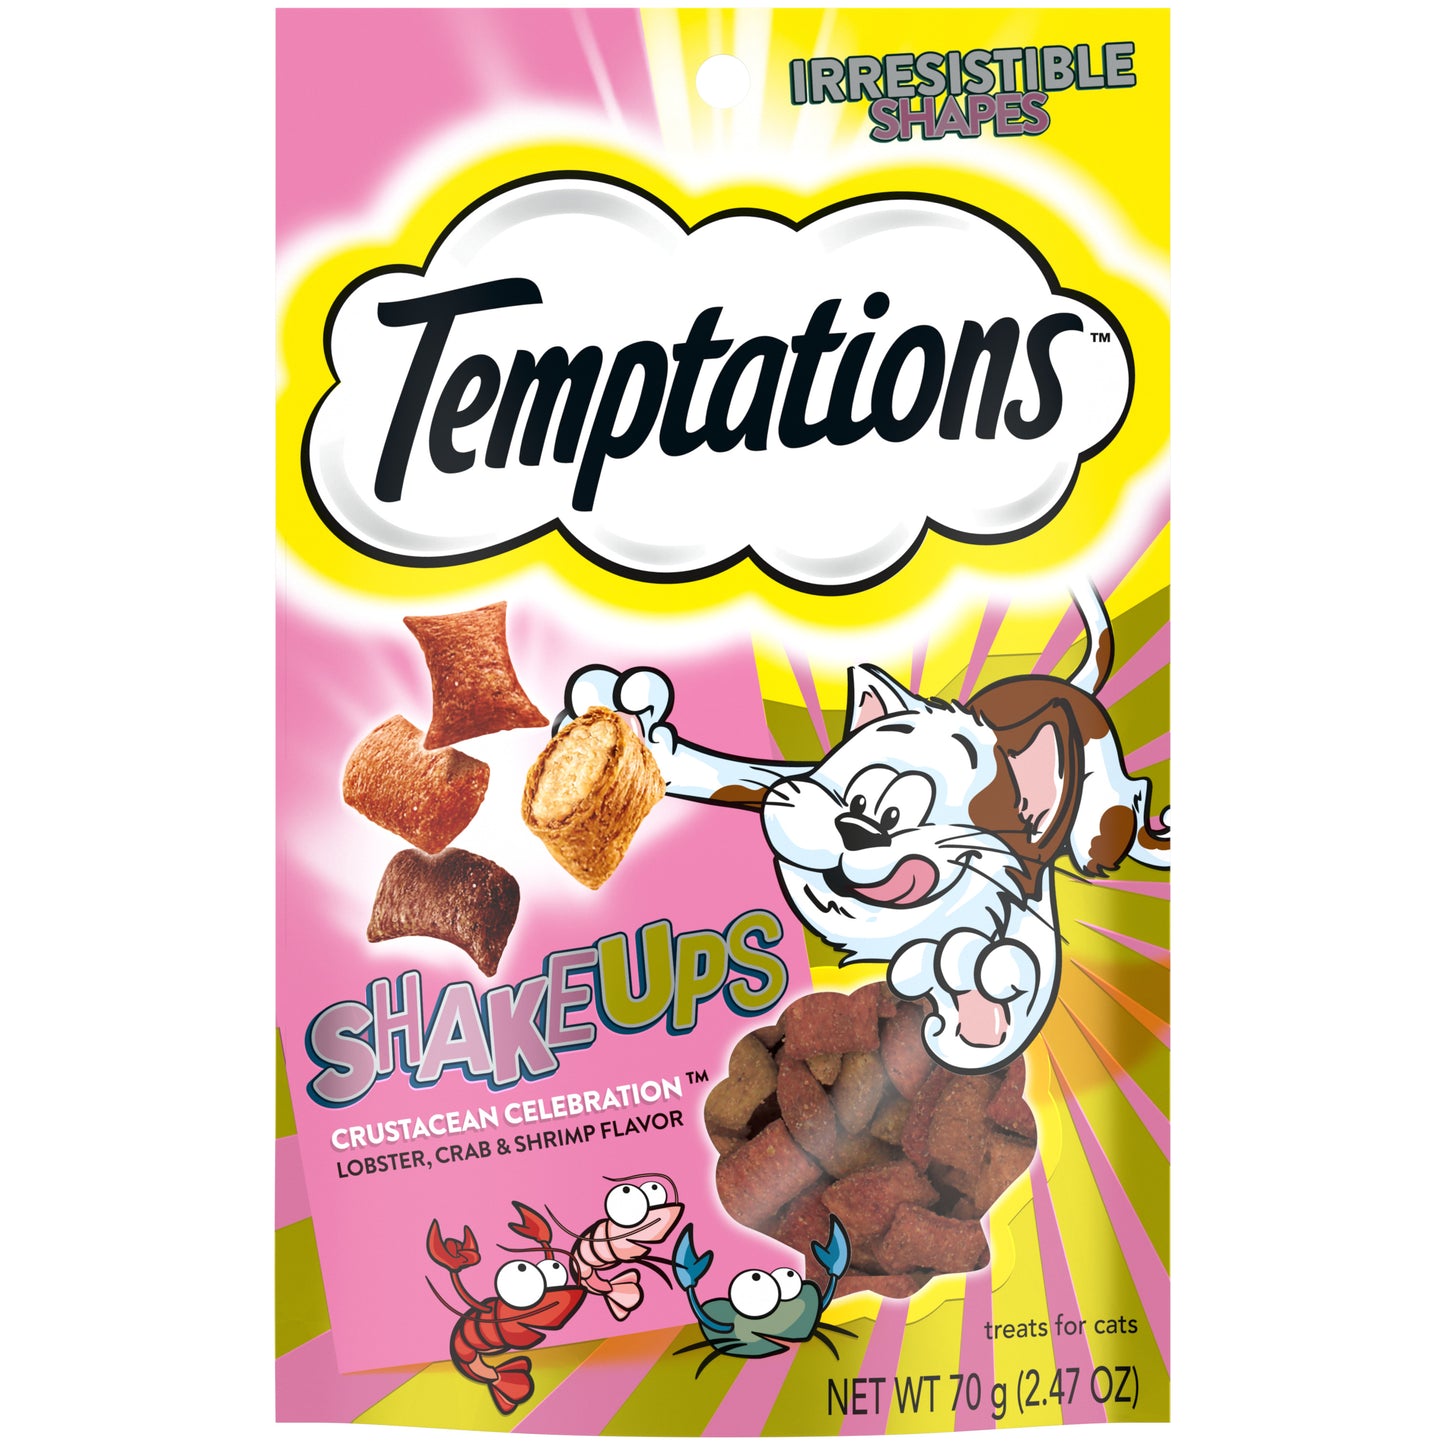 [Temptations][TEMPTATIONS ShakeUps Crunchy and Soft Cat Treats, Crustacean Celebration Flavor, 2.47 oz. Pouch][Main Image (Front)]